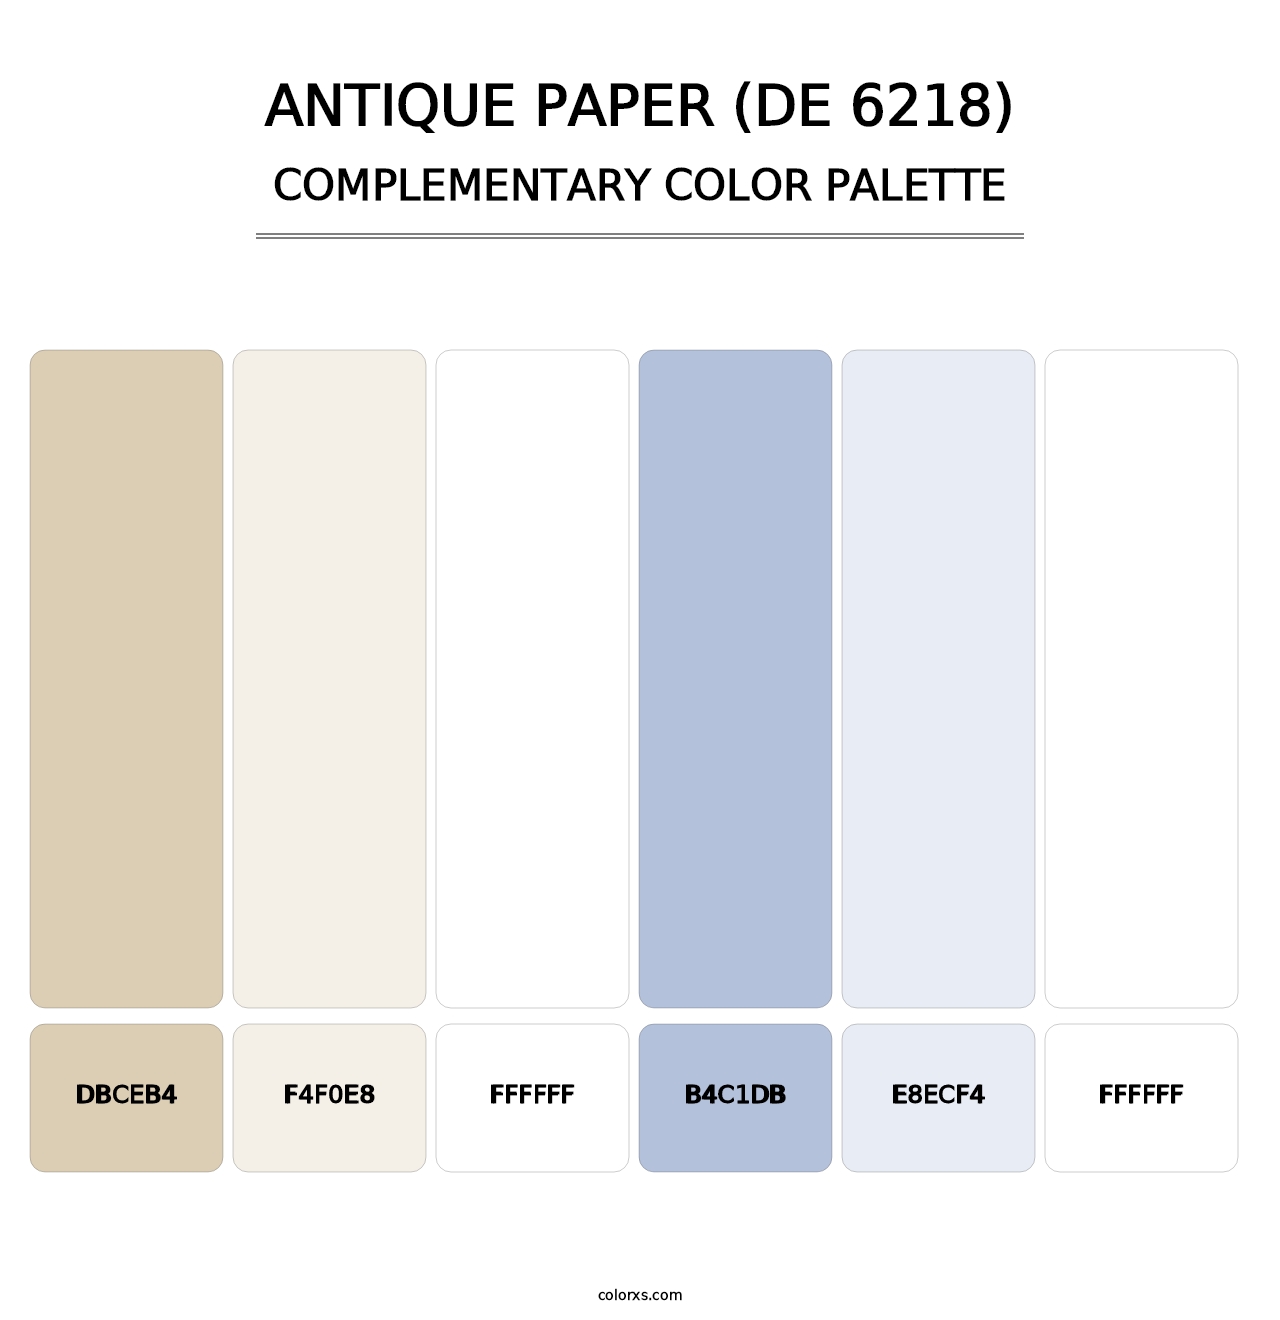 Antique Paper (DE 6218) - Complementary Color Palette